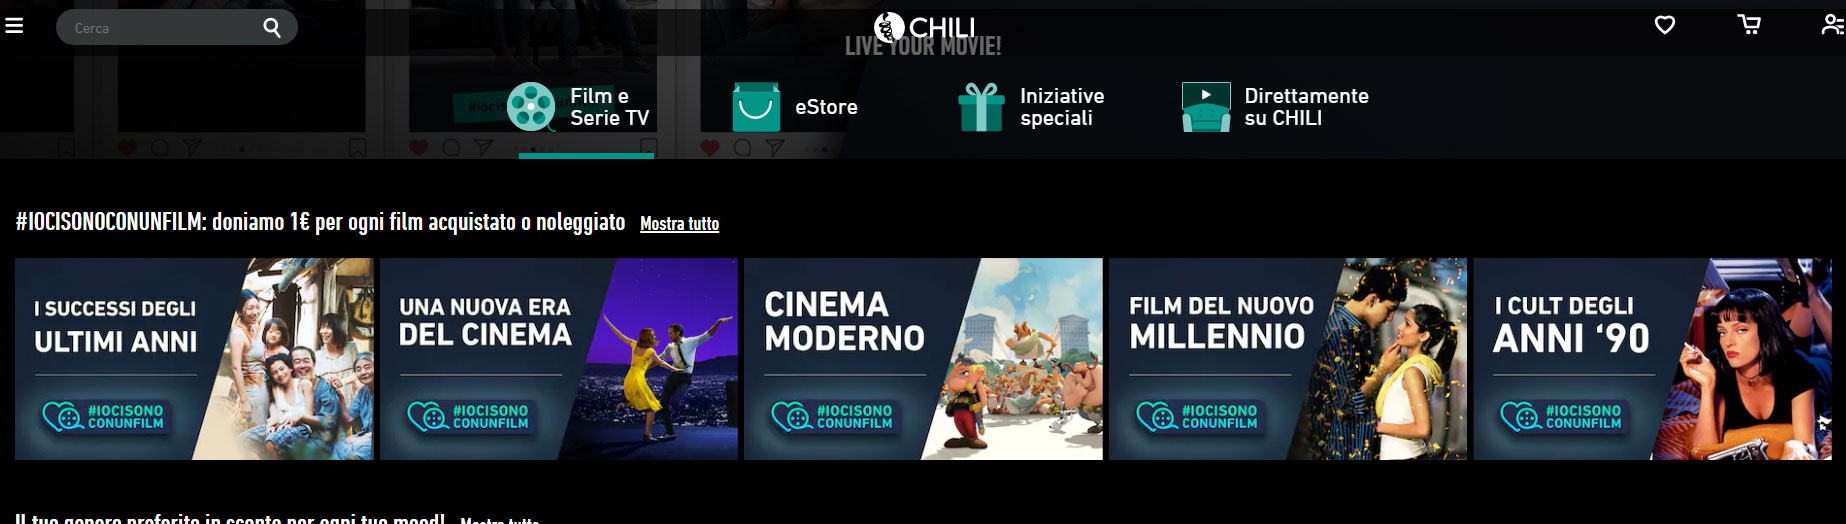 Chili IoCiSonoConUnFilm